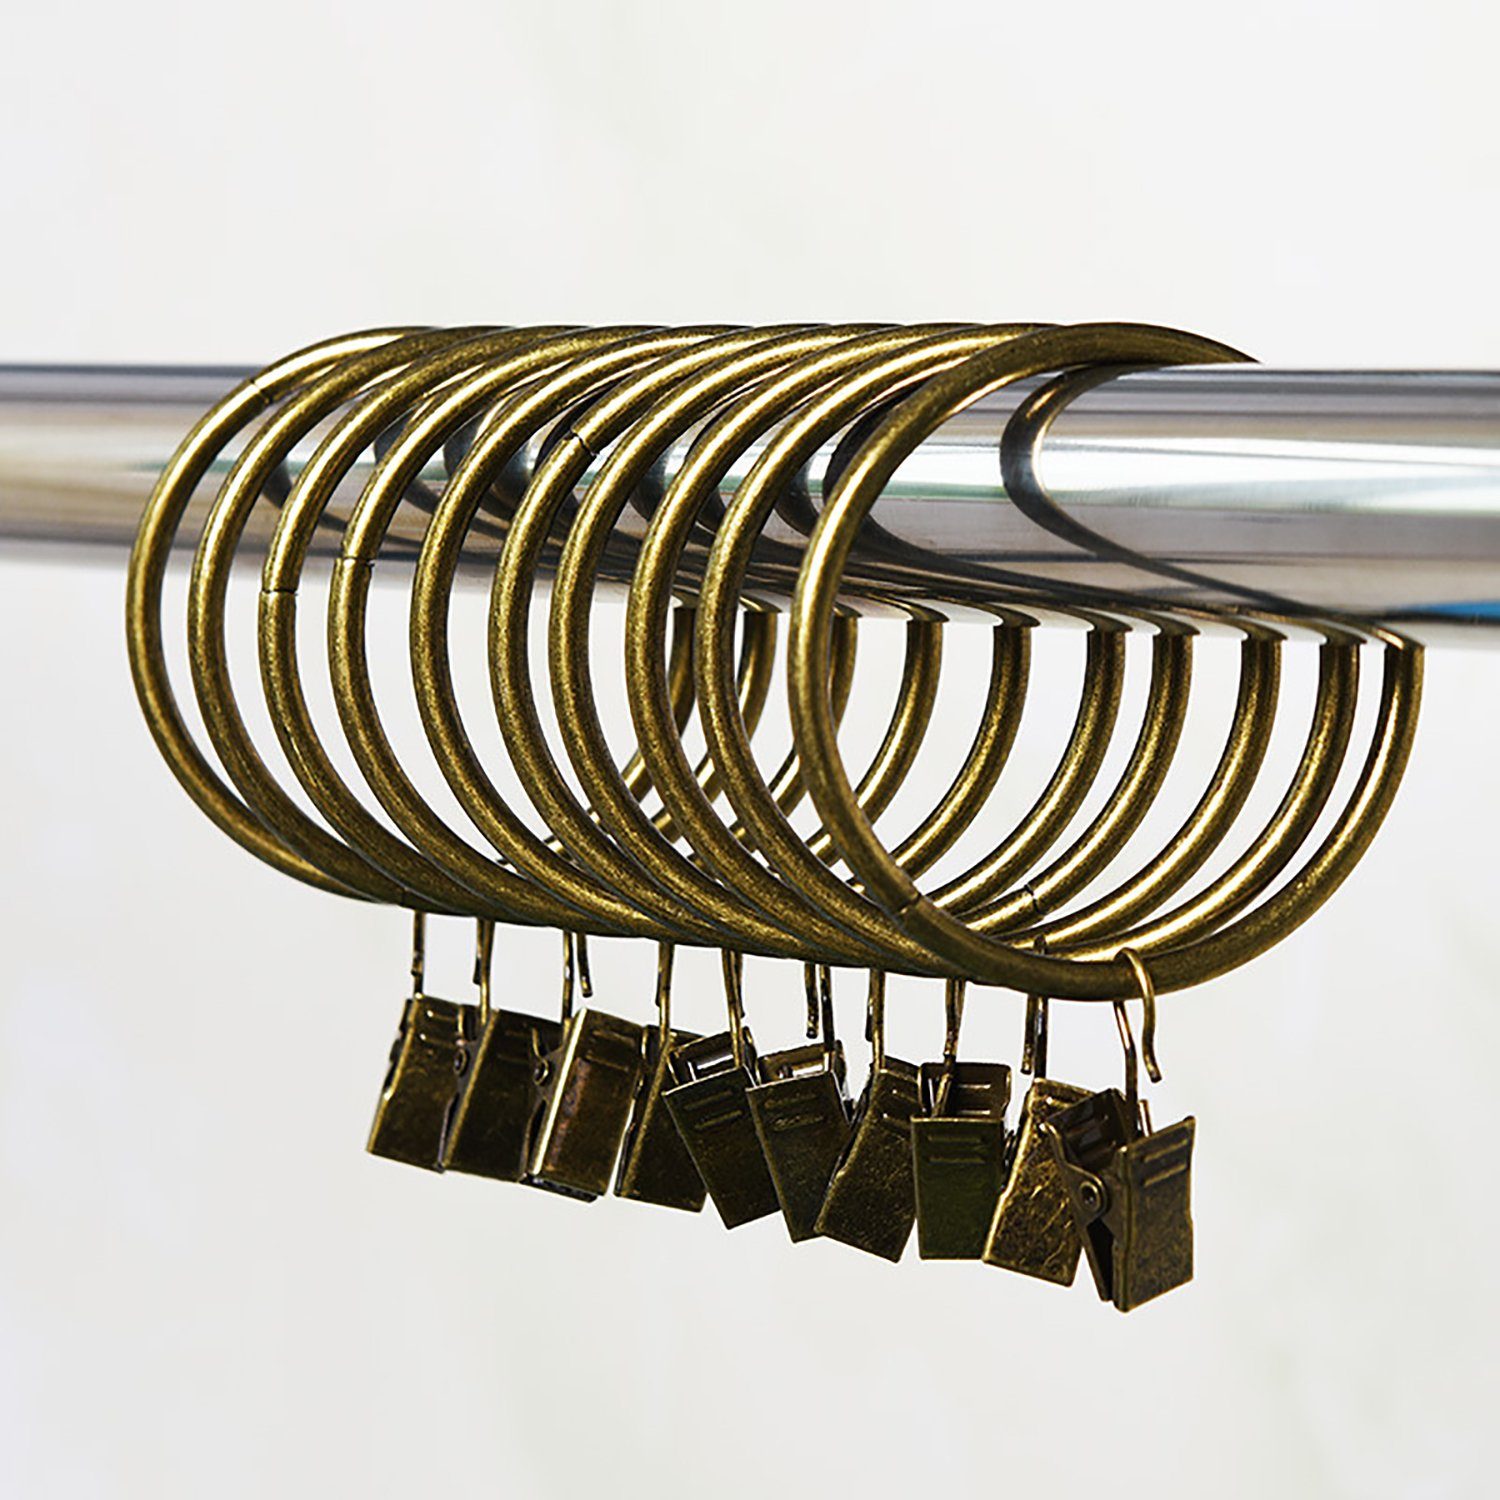 Klemmhalter für ZAXSD, Bronze 32mm mit Gardinenringe (40-St), Vorhangringe Vorhang Clips, Metall Gardinenstangen Ringe Haken mit Clips 40pcs Vorhang